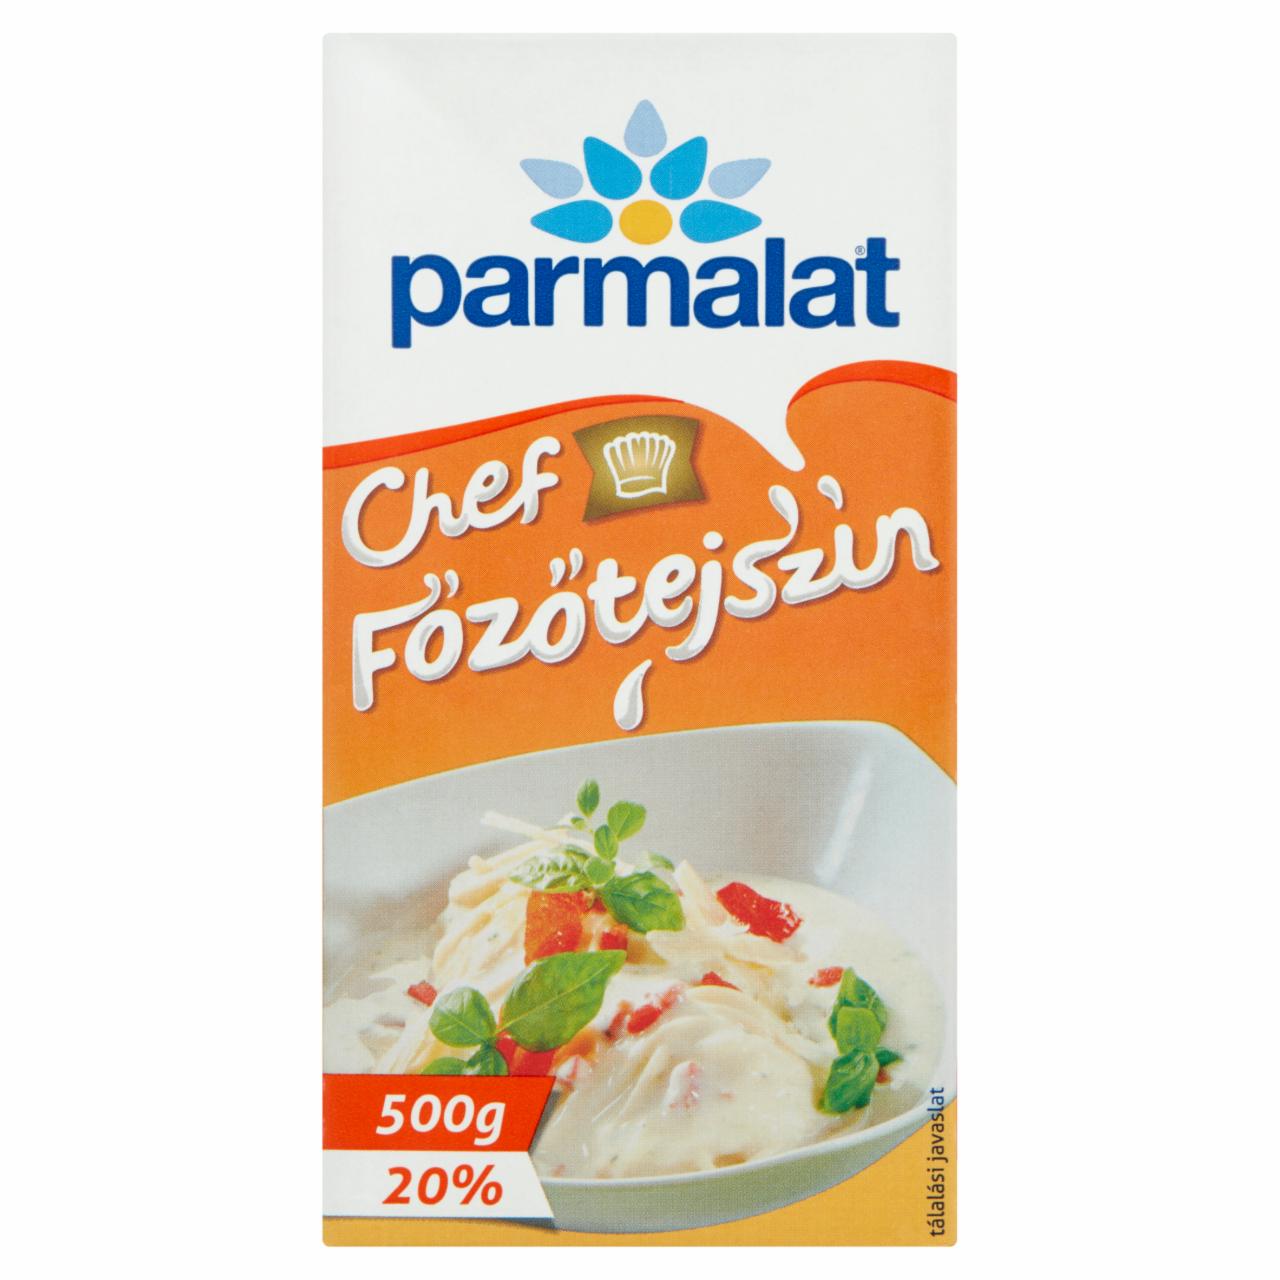 Képek - Parmalat Chef UHT főzőtejszín 20% 500 g